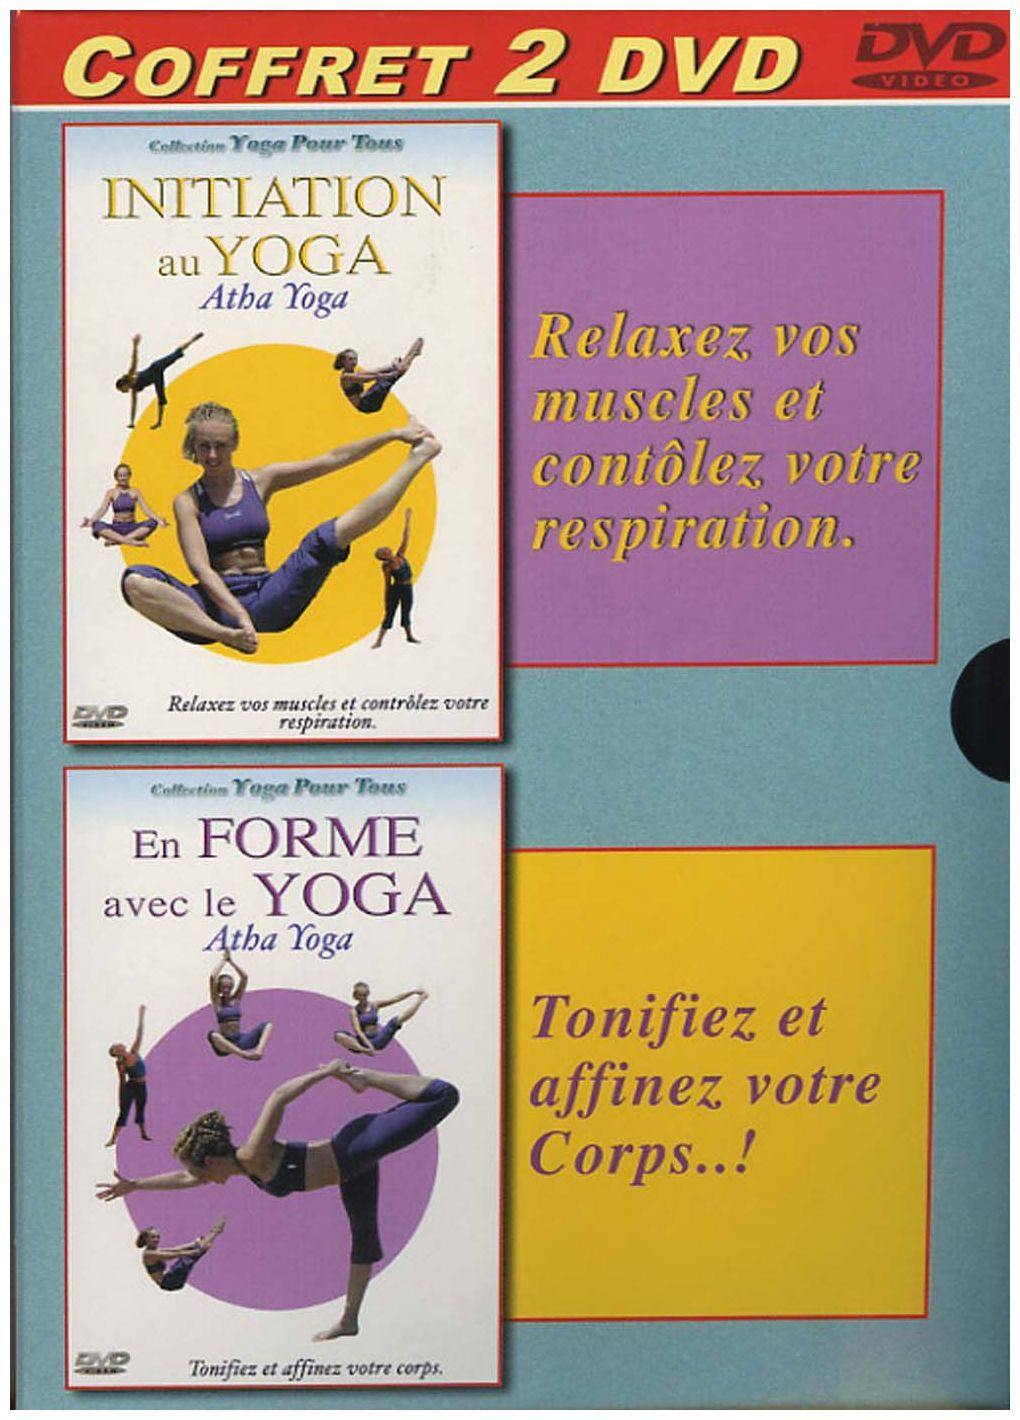 Coffret Yoga : Yoga Pour Tous  Yoga Exercices  En Forme Avec Le Yoga [DVD] - flash vidéo